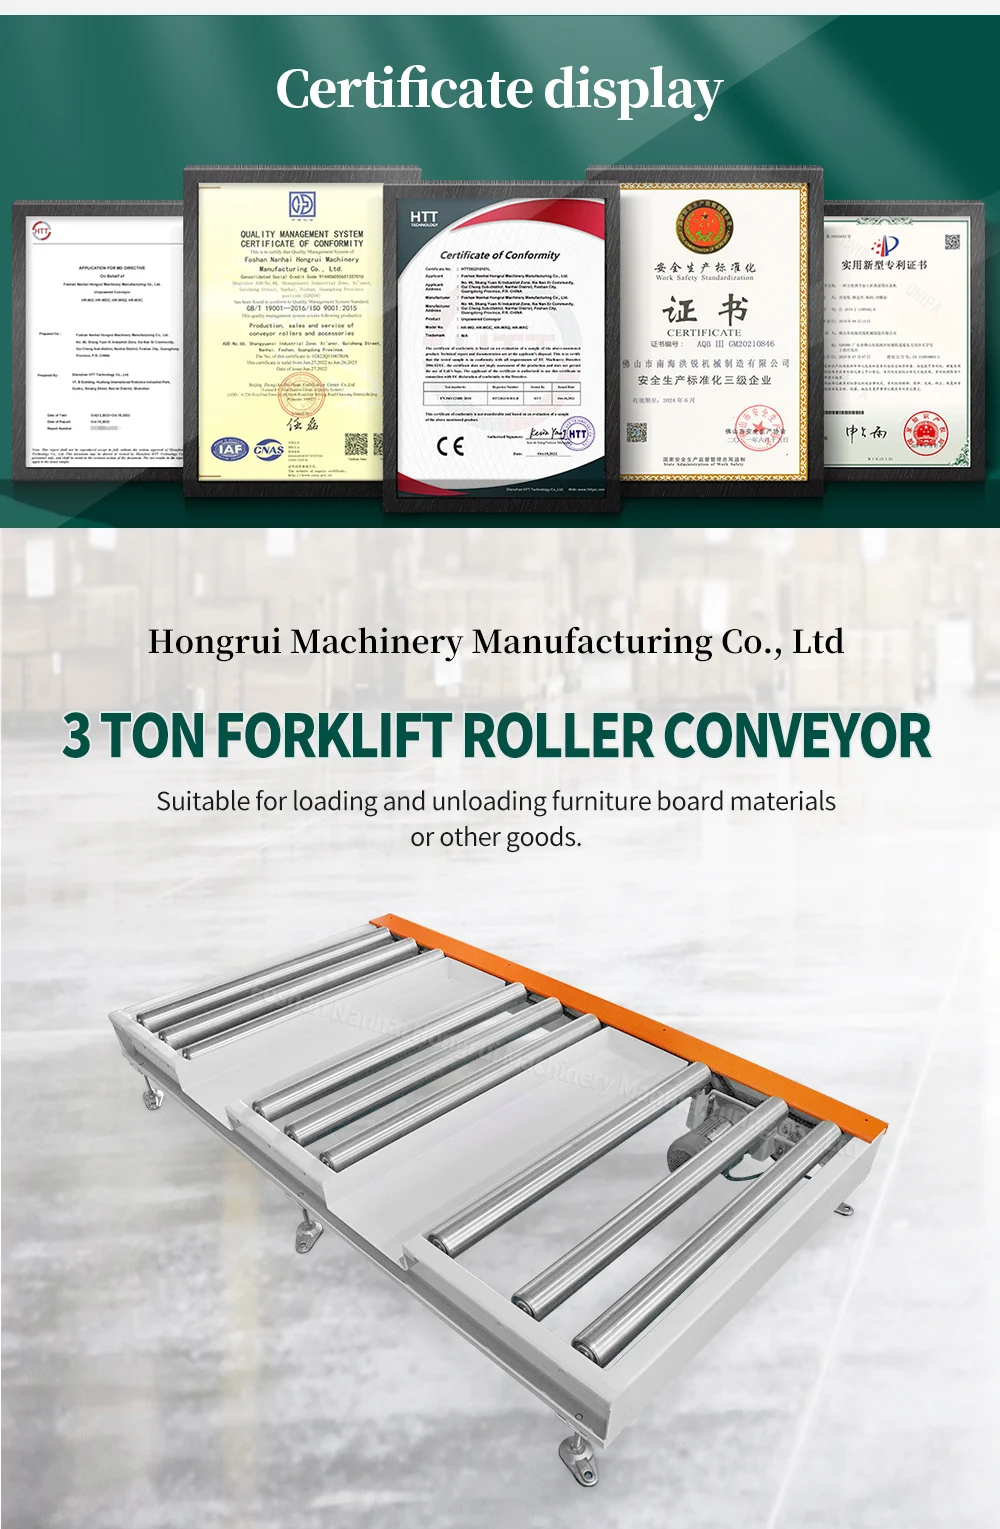 Versatile Forklift Roller Conveyors: Efficient Handling and Transport Solutions manufacture